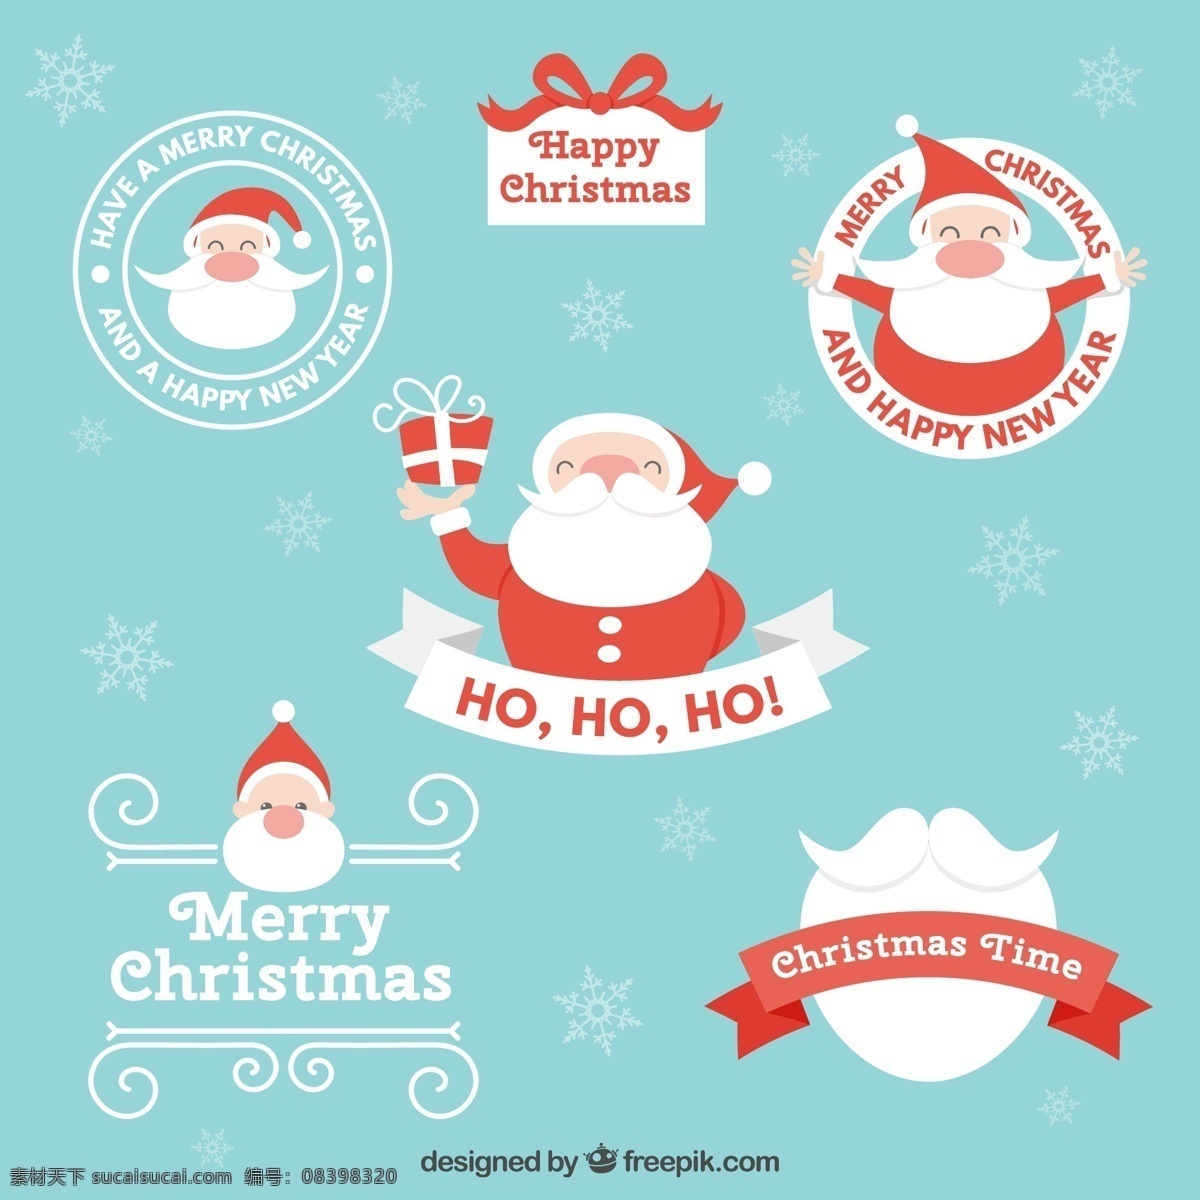 圣 塔克 劳斯 徽章 圣诞节 标签 新的一年 新年快乐 圣诞快乐 冬天快乐 圣诞老人 克劳斯 圣诞庆祝活动 新的节日 每年节日快乐 季节 青色 天蓝色